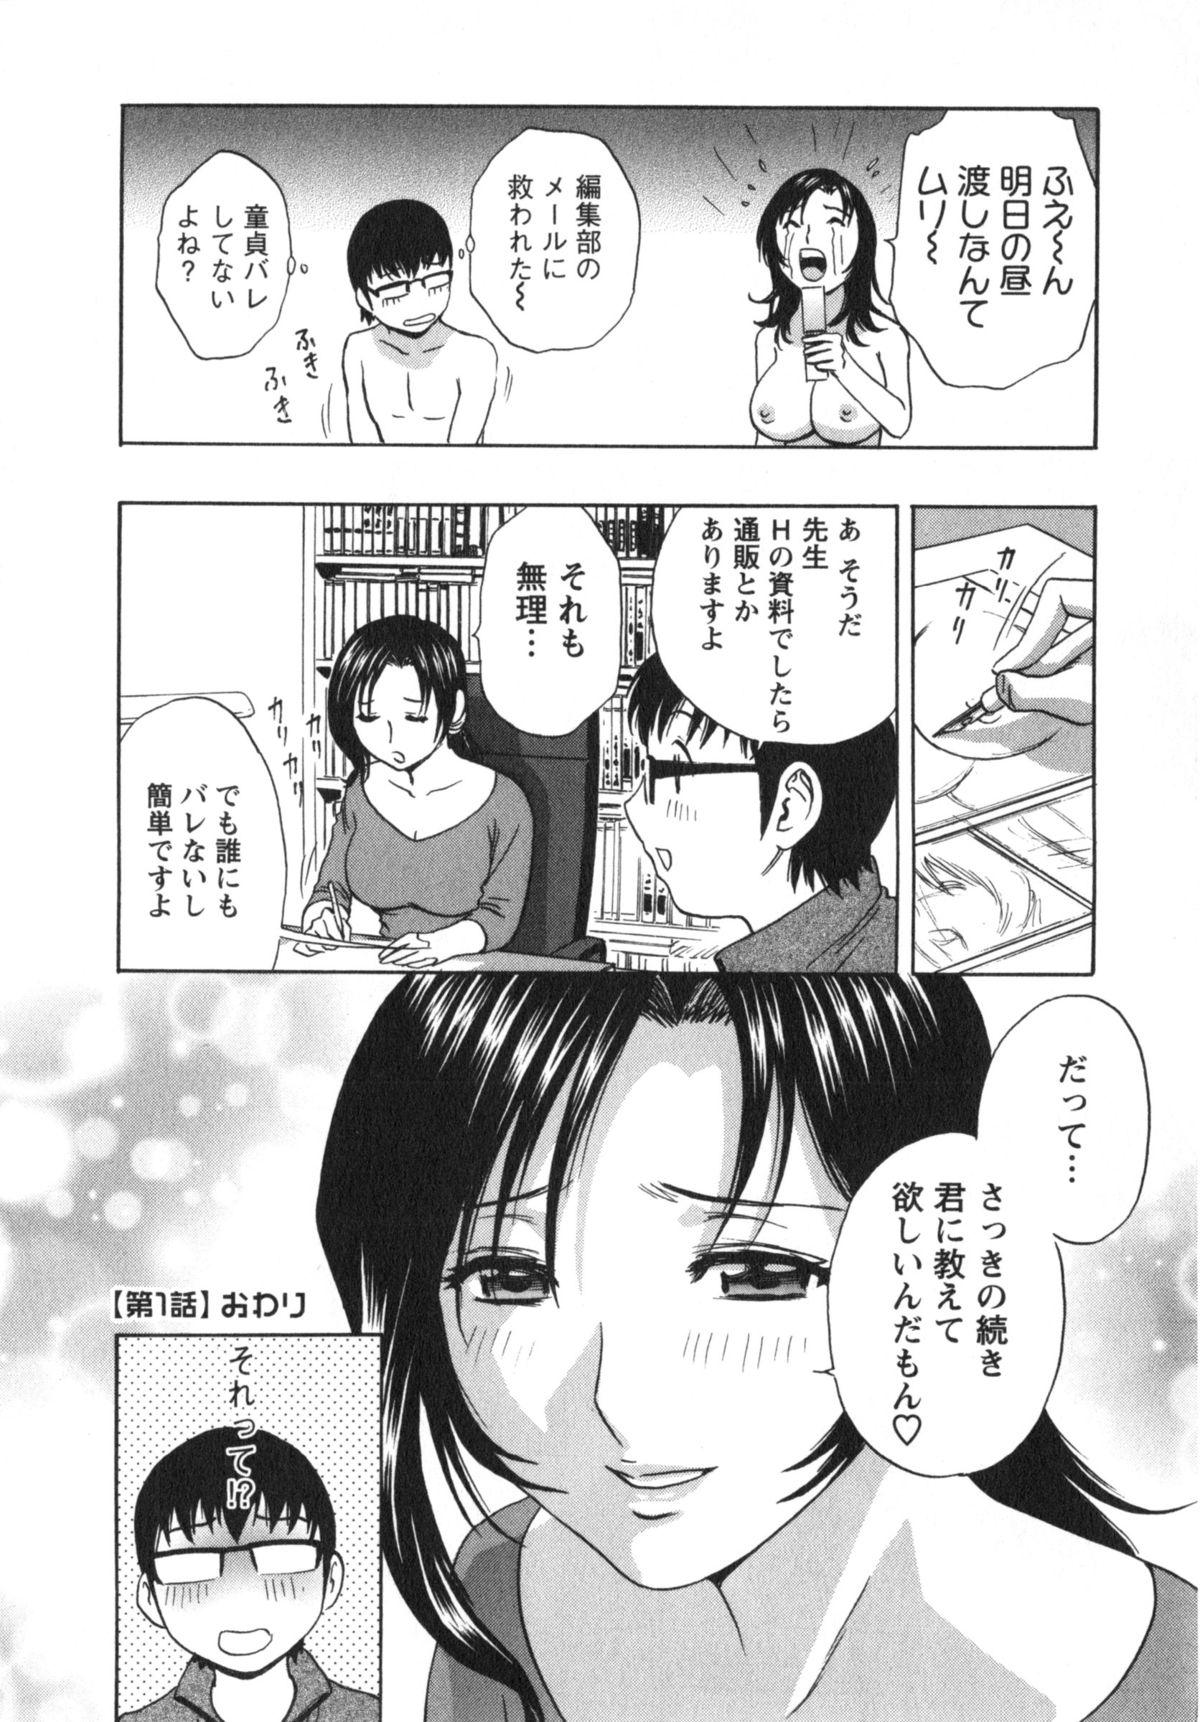 Manga no youna Hitozuma to no Hibi - Days with Married Women such as Comics. 24